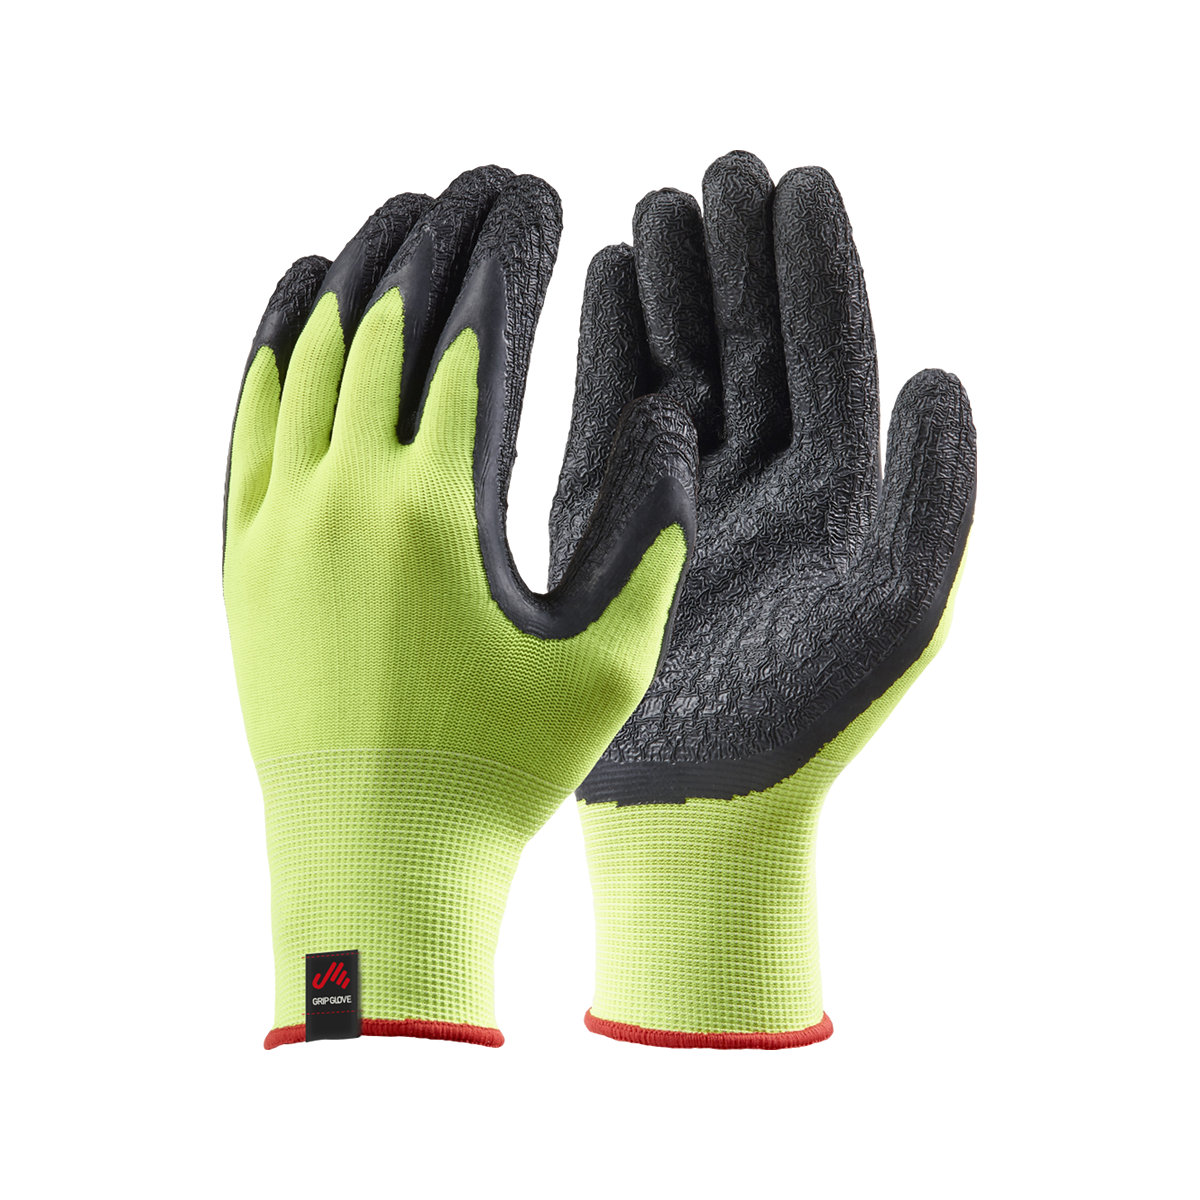 Musto Dipped Grip gants de voile jaune fluo, set de 3, taille L